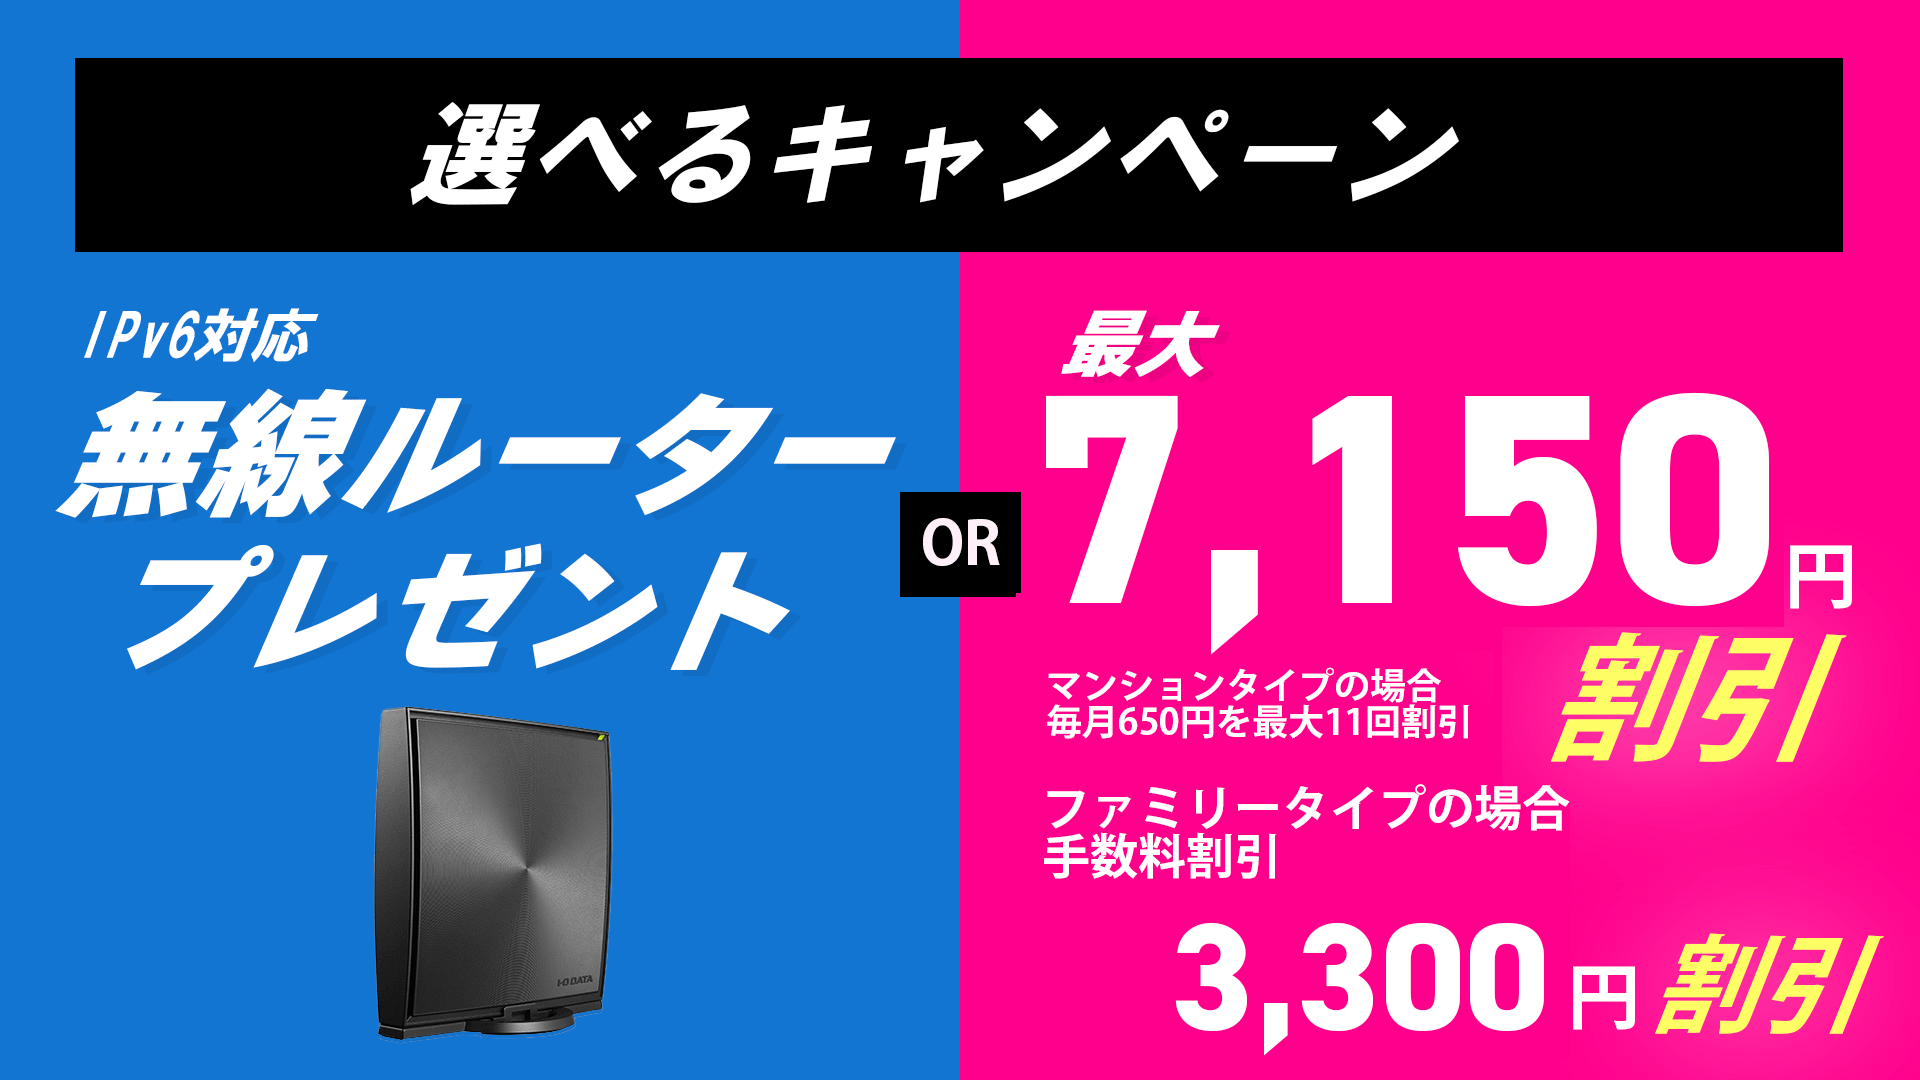 選べるキャンペーンIpv6対応無線ルータープレゼントOR最大7,150円割引